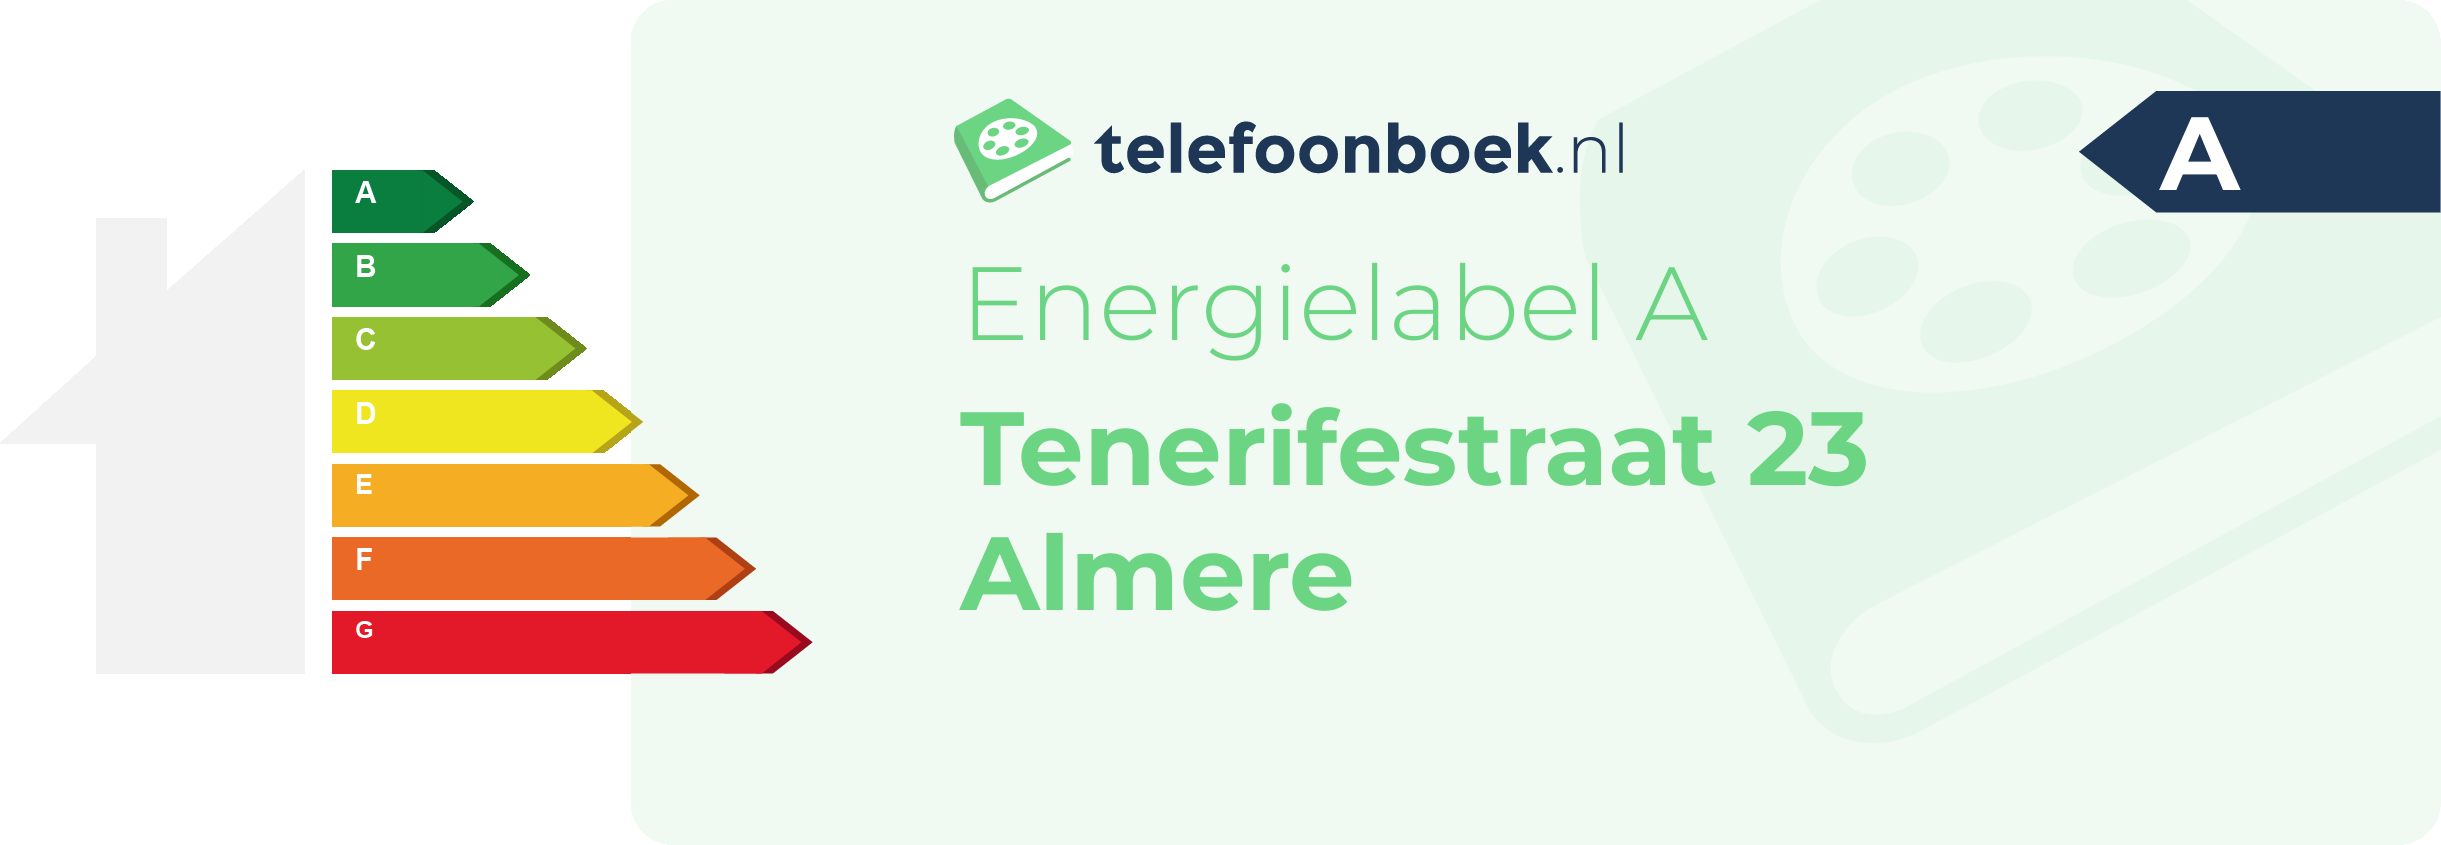 Energielabel Tenerifestraat 23 Almere